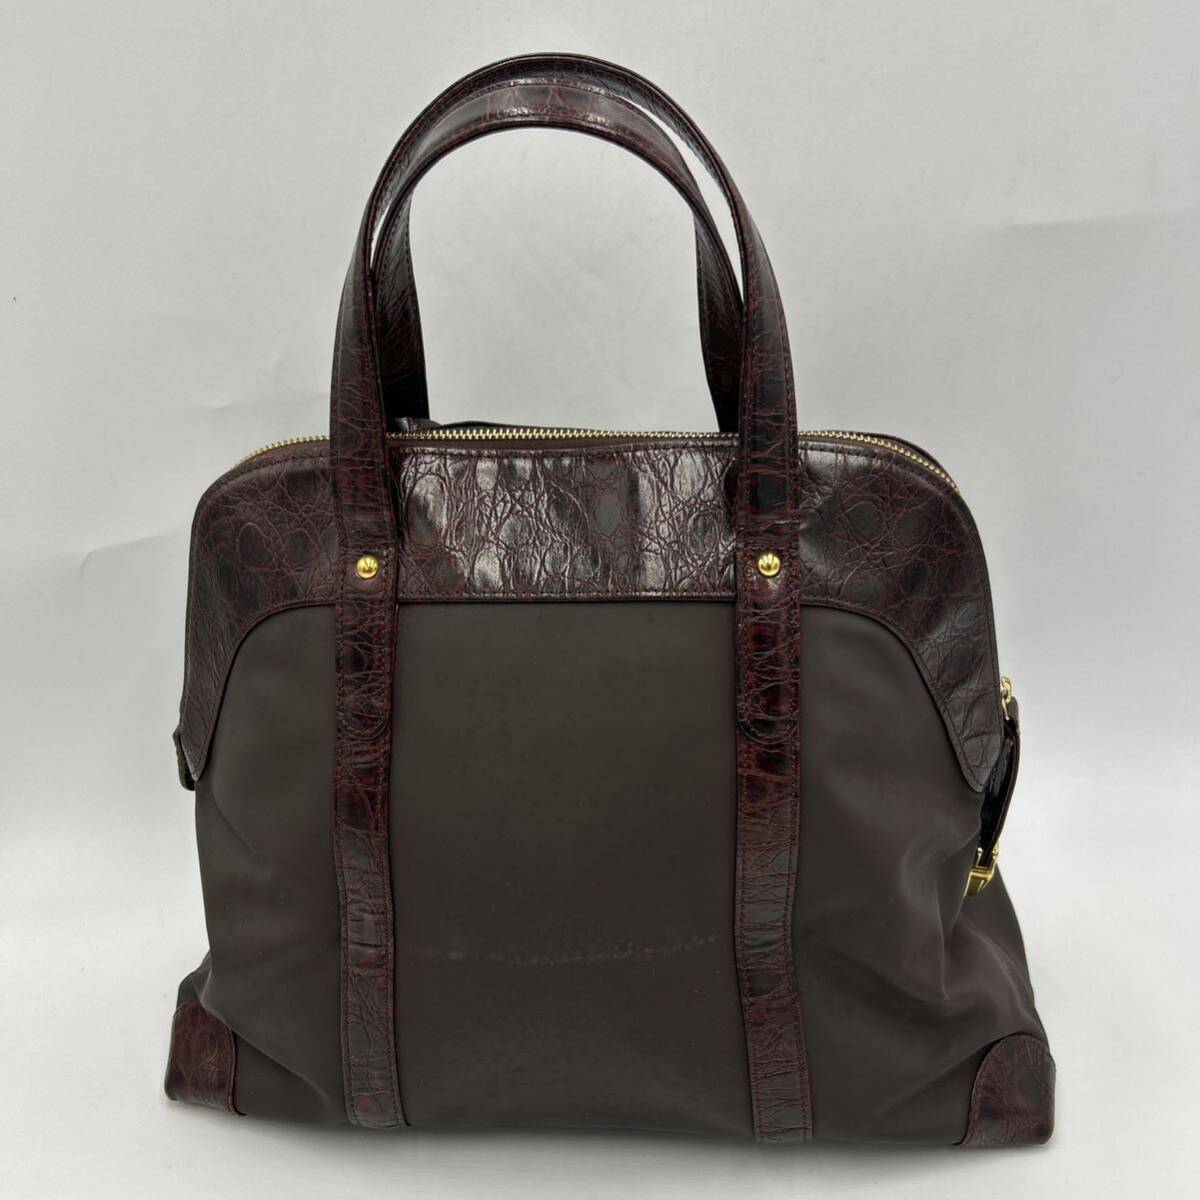 A @ 洗礼されたデザイン '高級感溢れる' LEILIAN レリアン LEATHER 切り替え トートバッグ 手提げ鞄 ハンドバッグ 婦人鞄 レディース 茶系の画像2